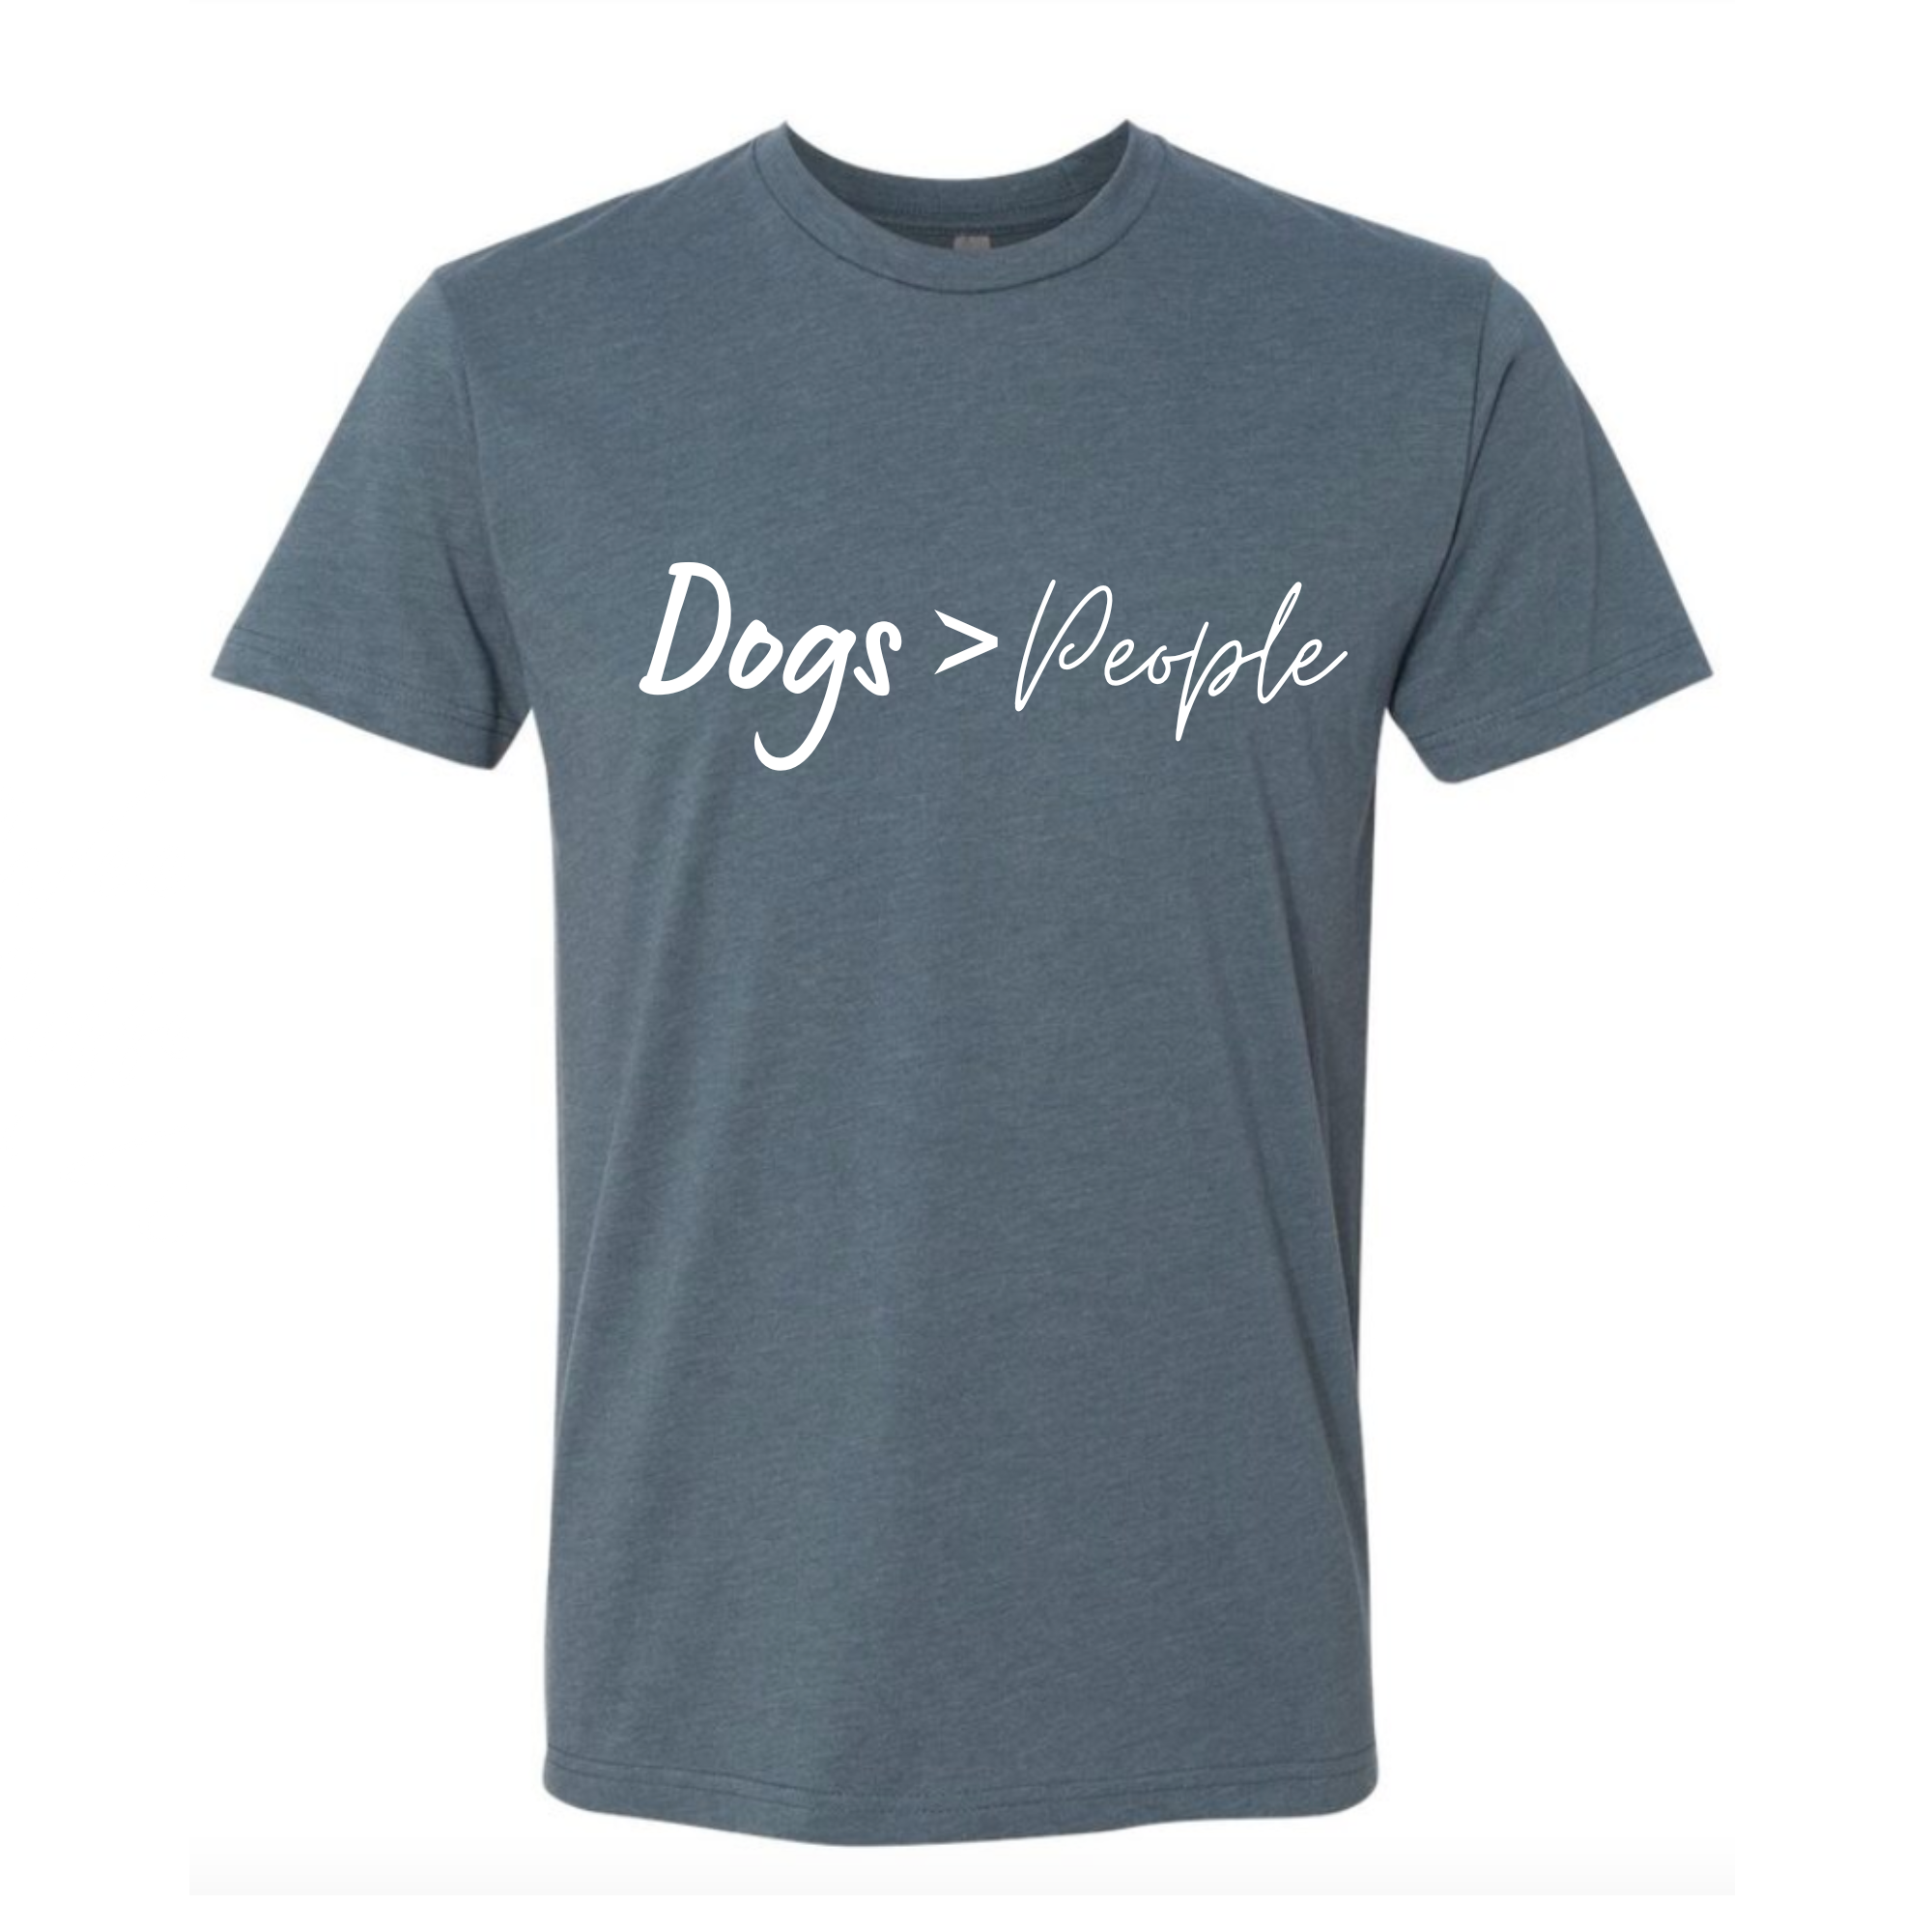  2-Piece Dog T-Shirts, Summer Dog Basketball T-Shirts